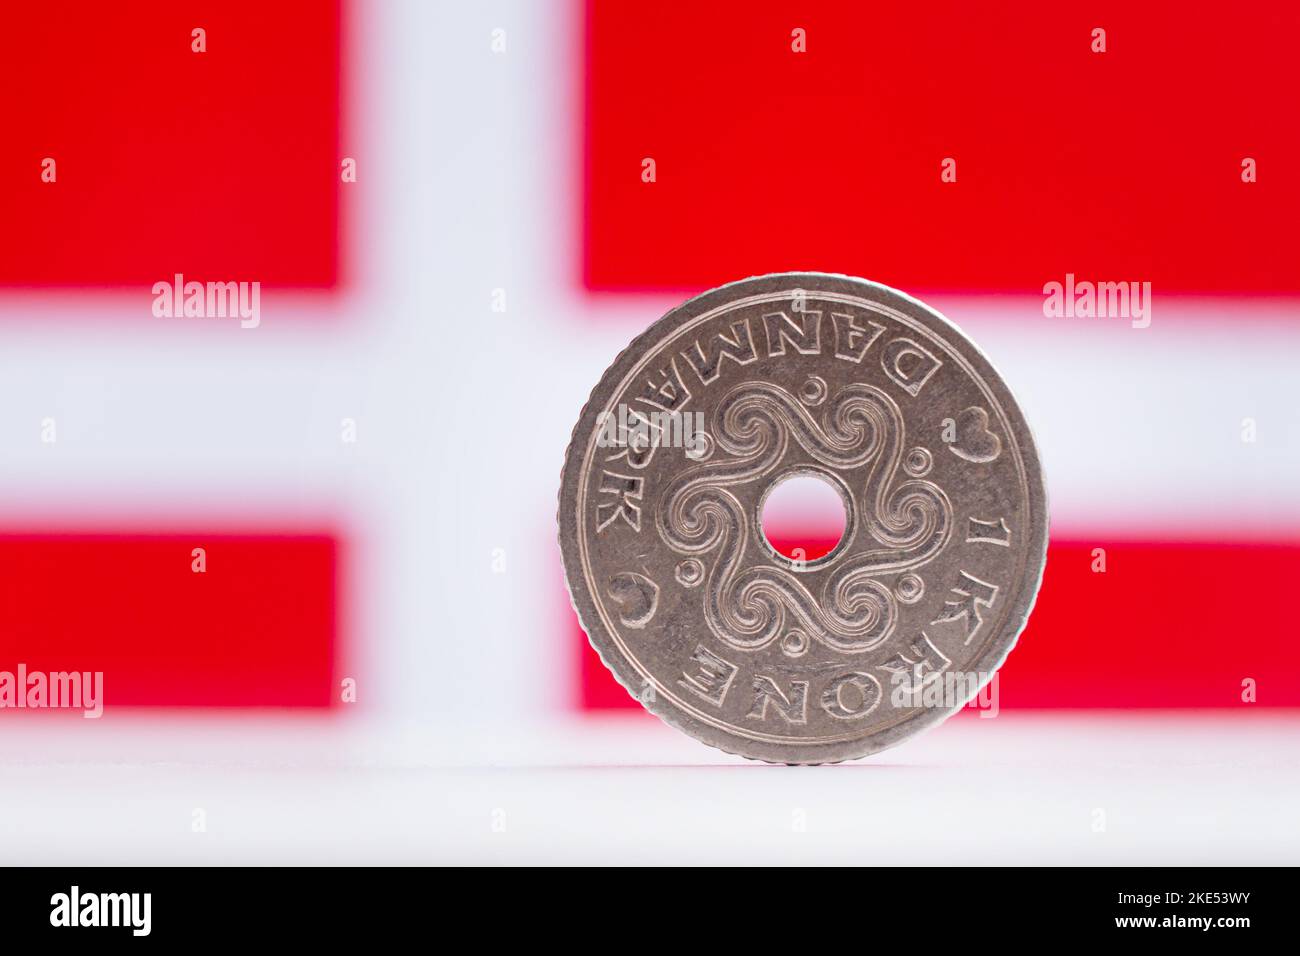 Dänische 1 Kronen mit einer dänischen Flagge im Hintergrund - makroregionaler oberflächlicher Fokus Stockfoto